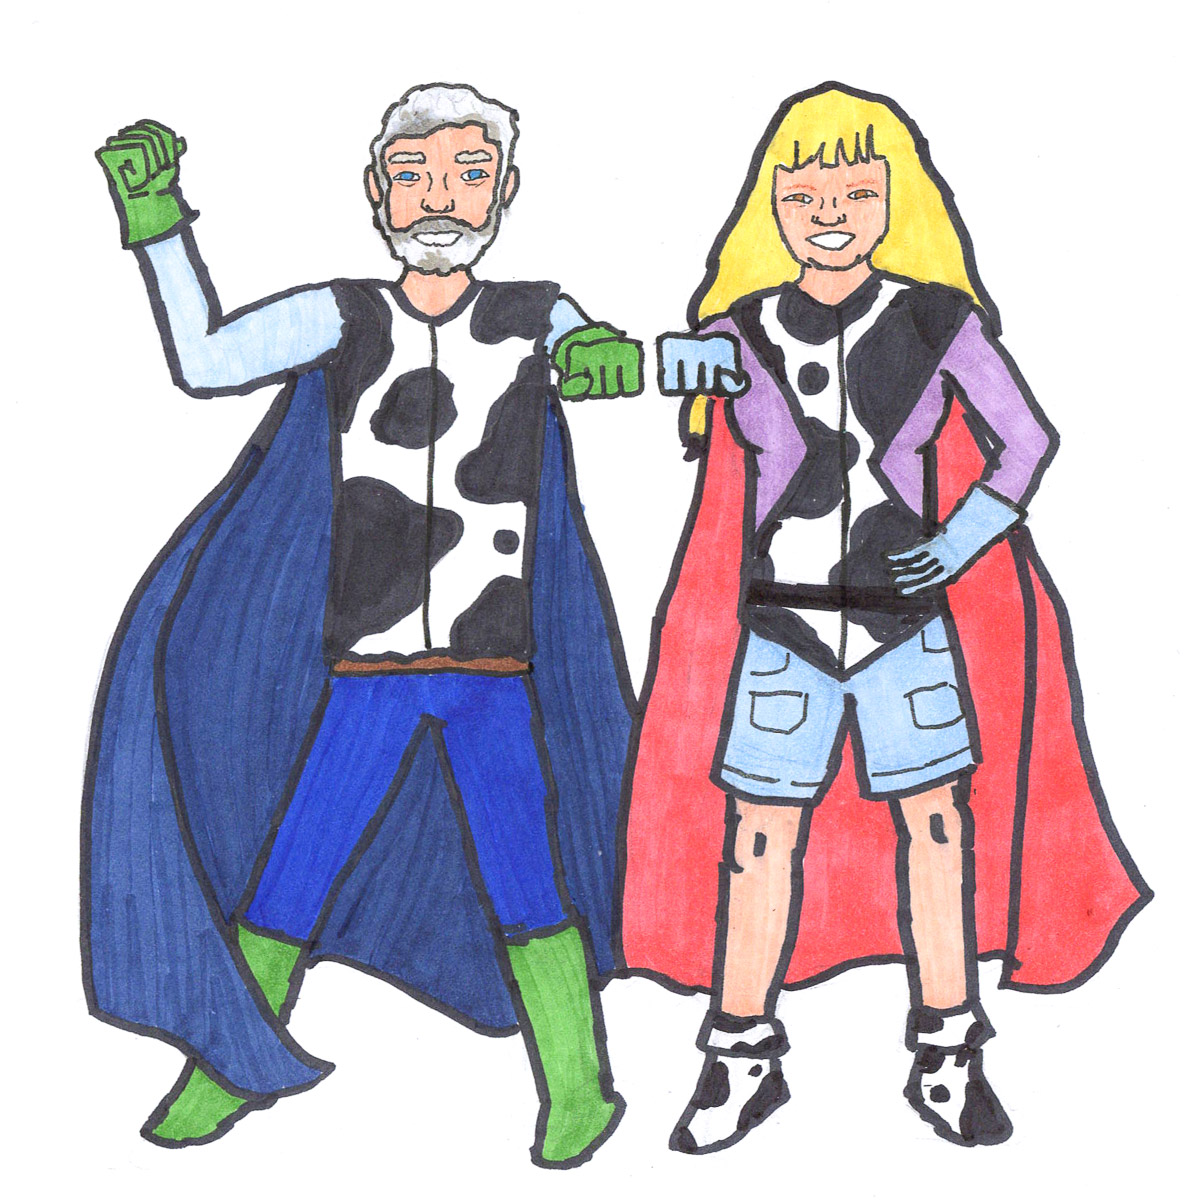 Randy and Joan Walker: Everyday Superheroes